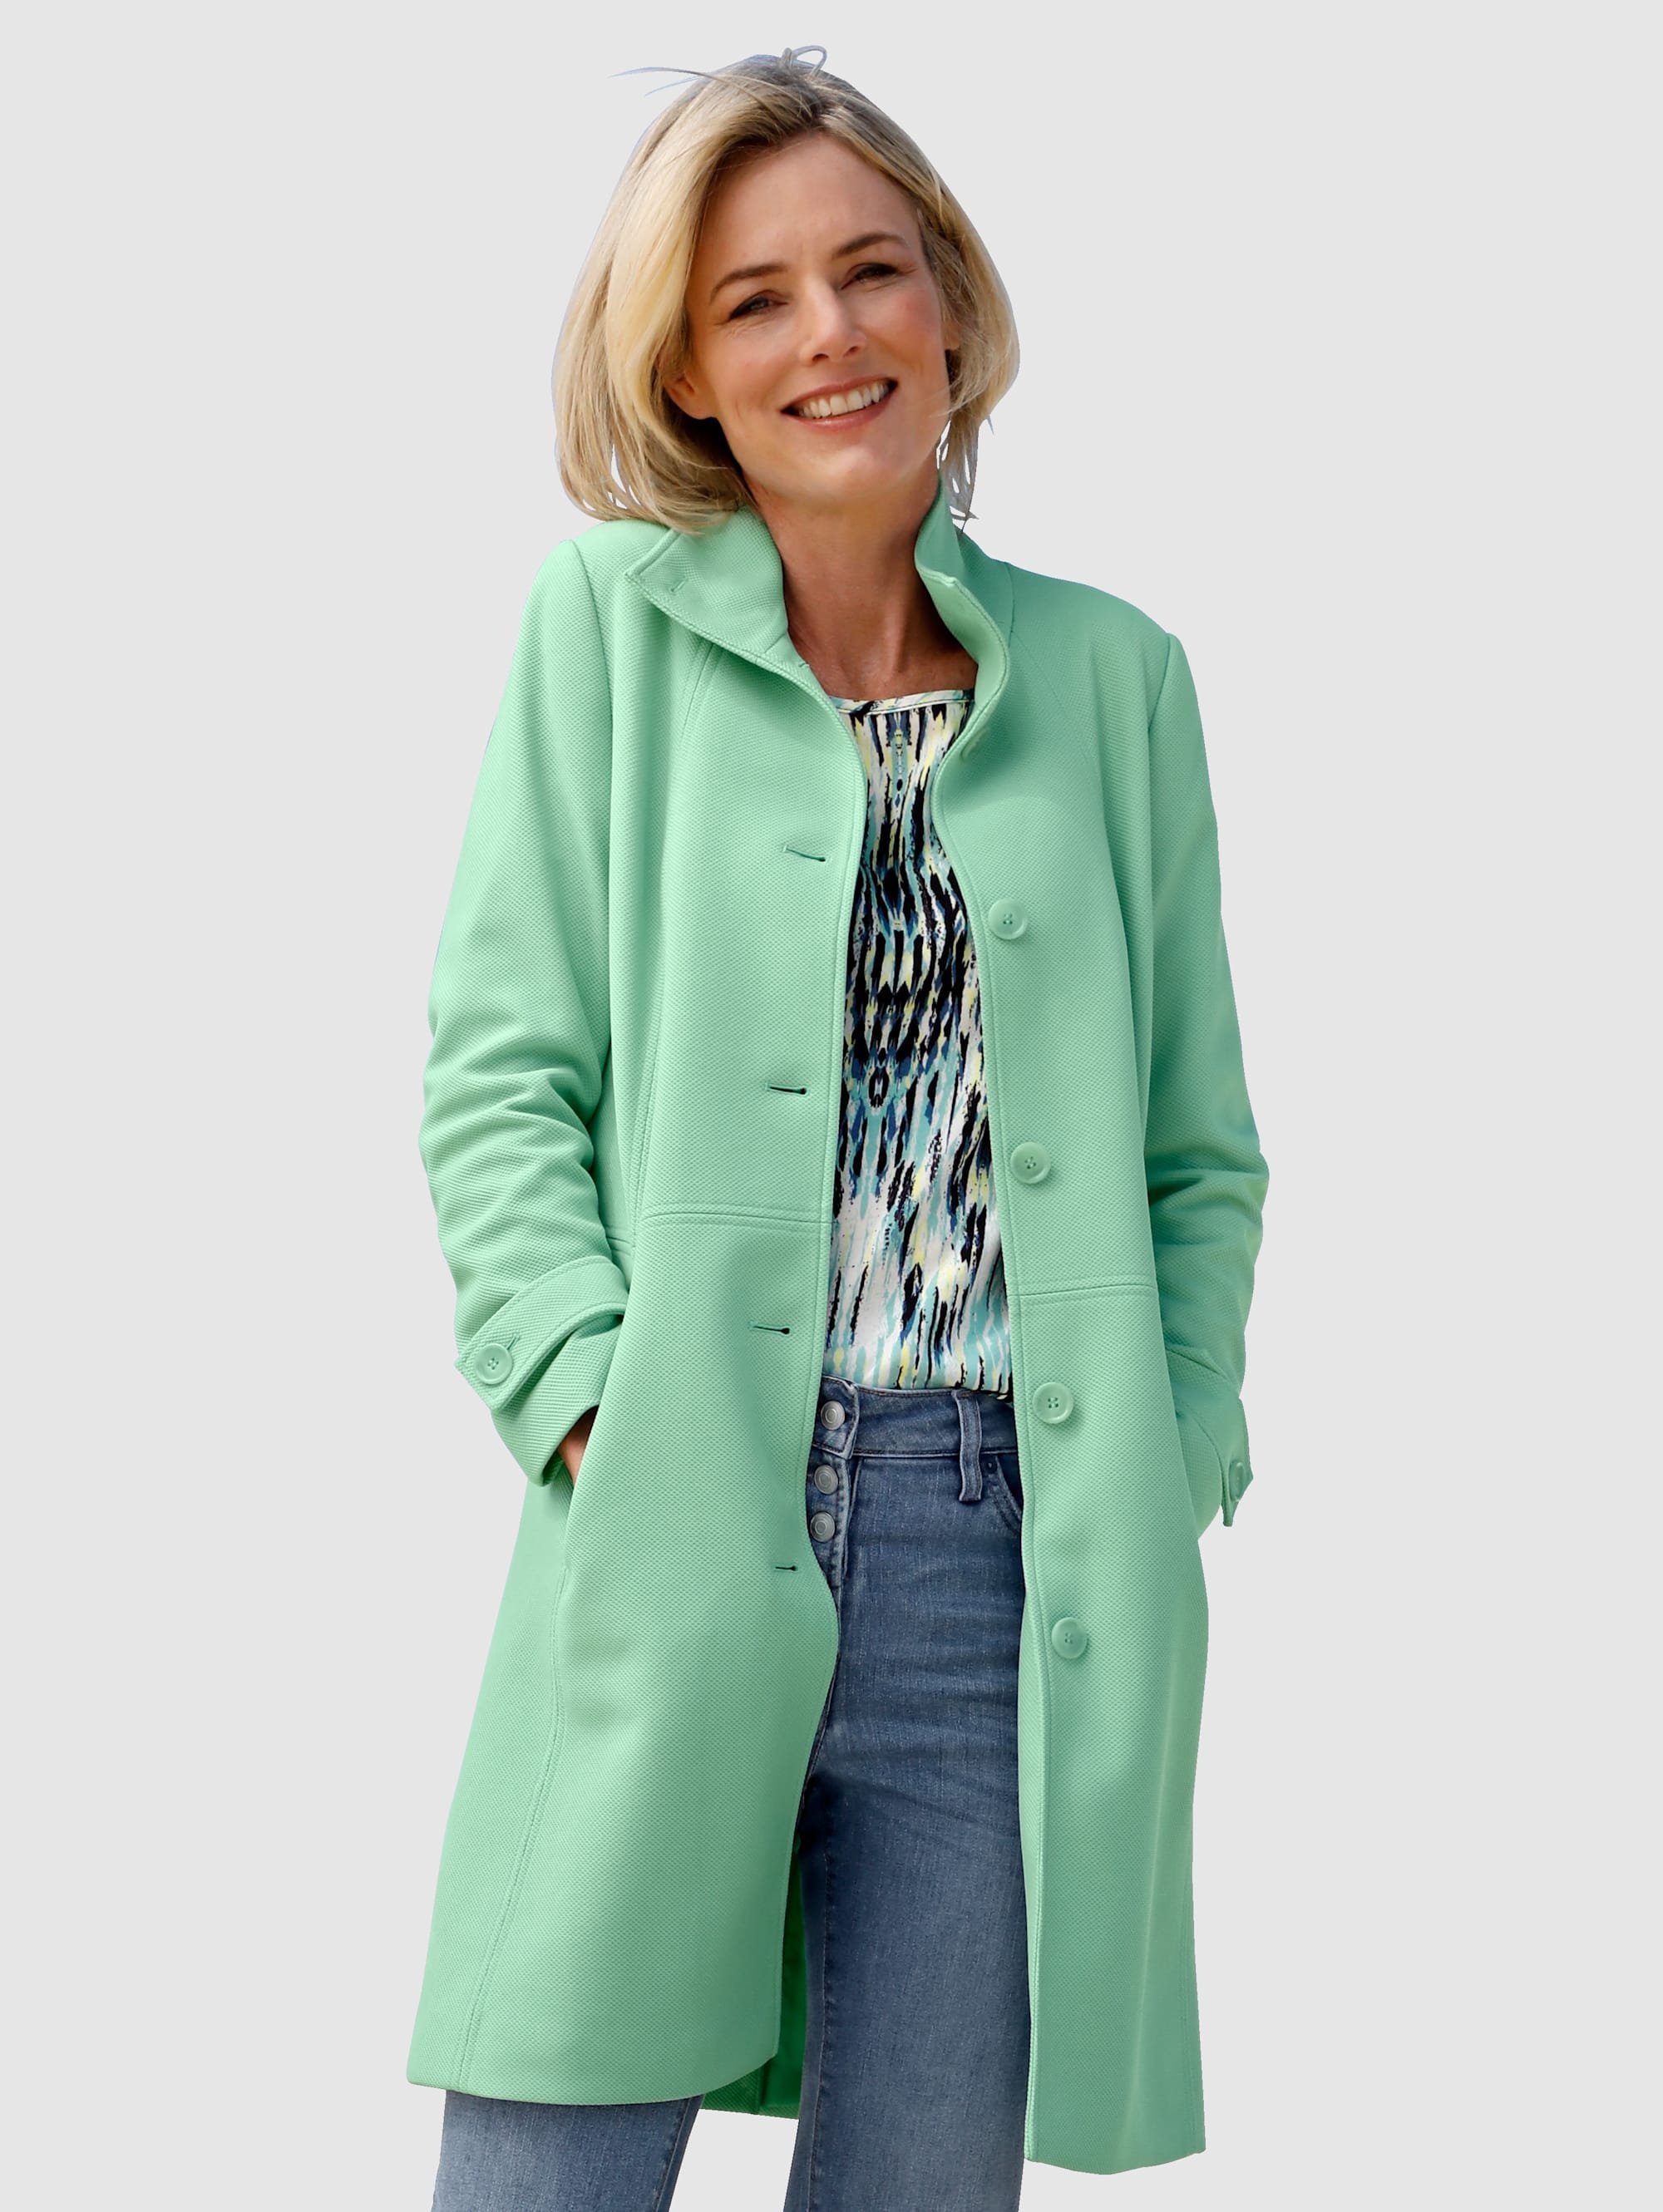 Mantel in grün online kaufen | OTTO